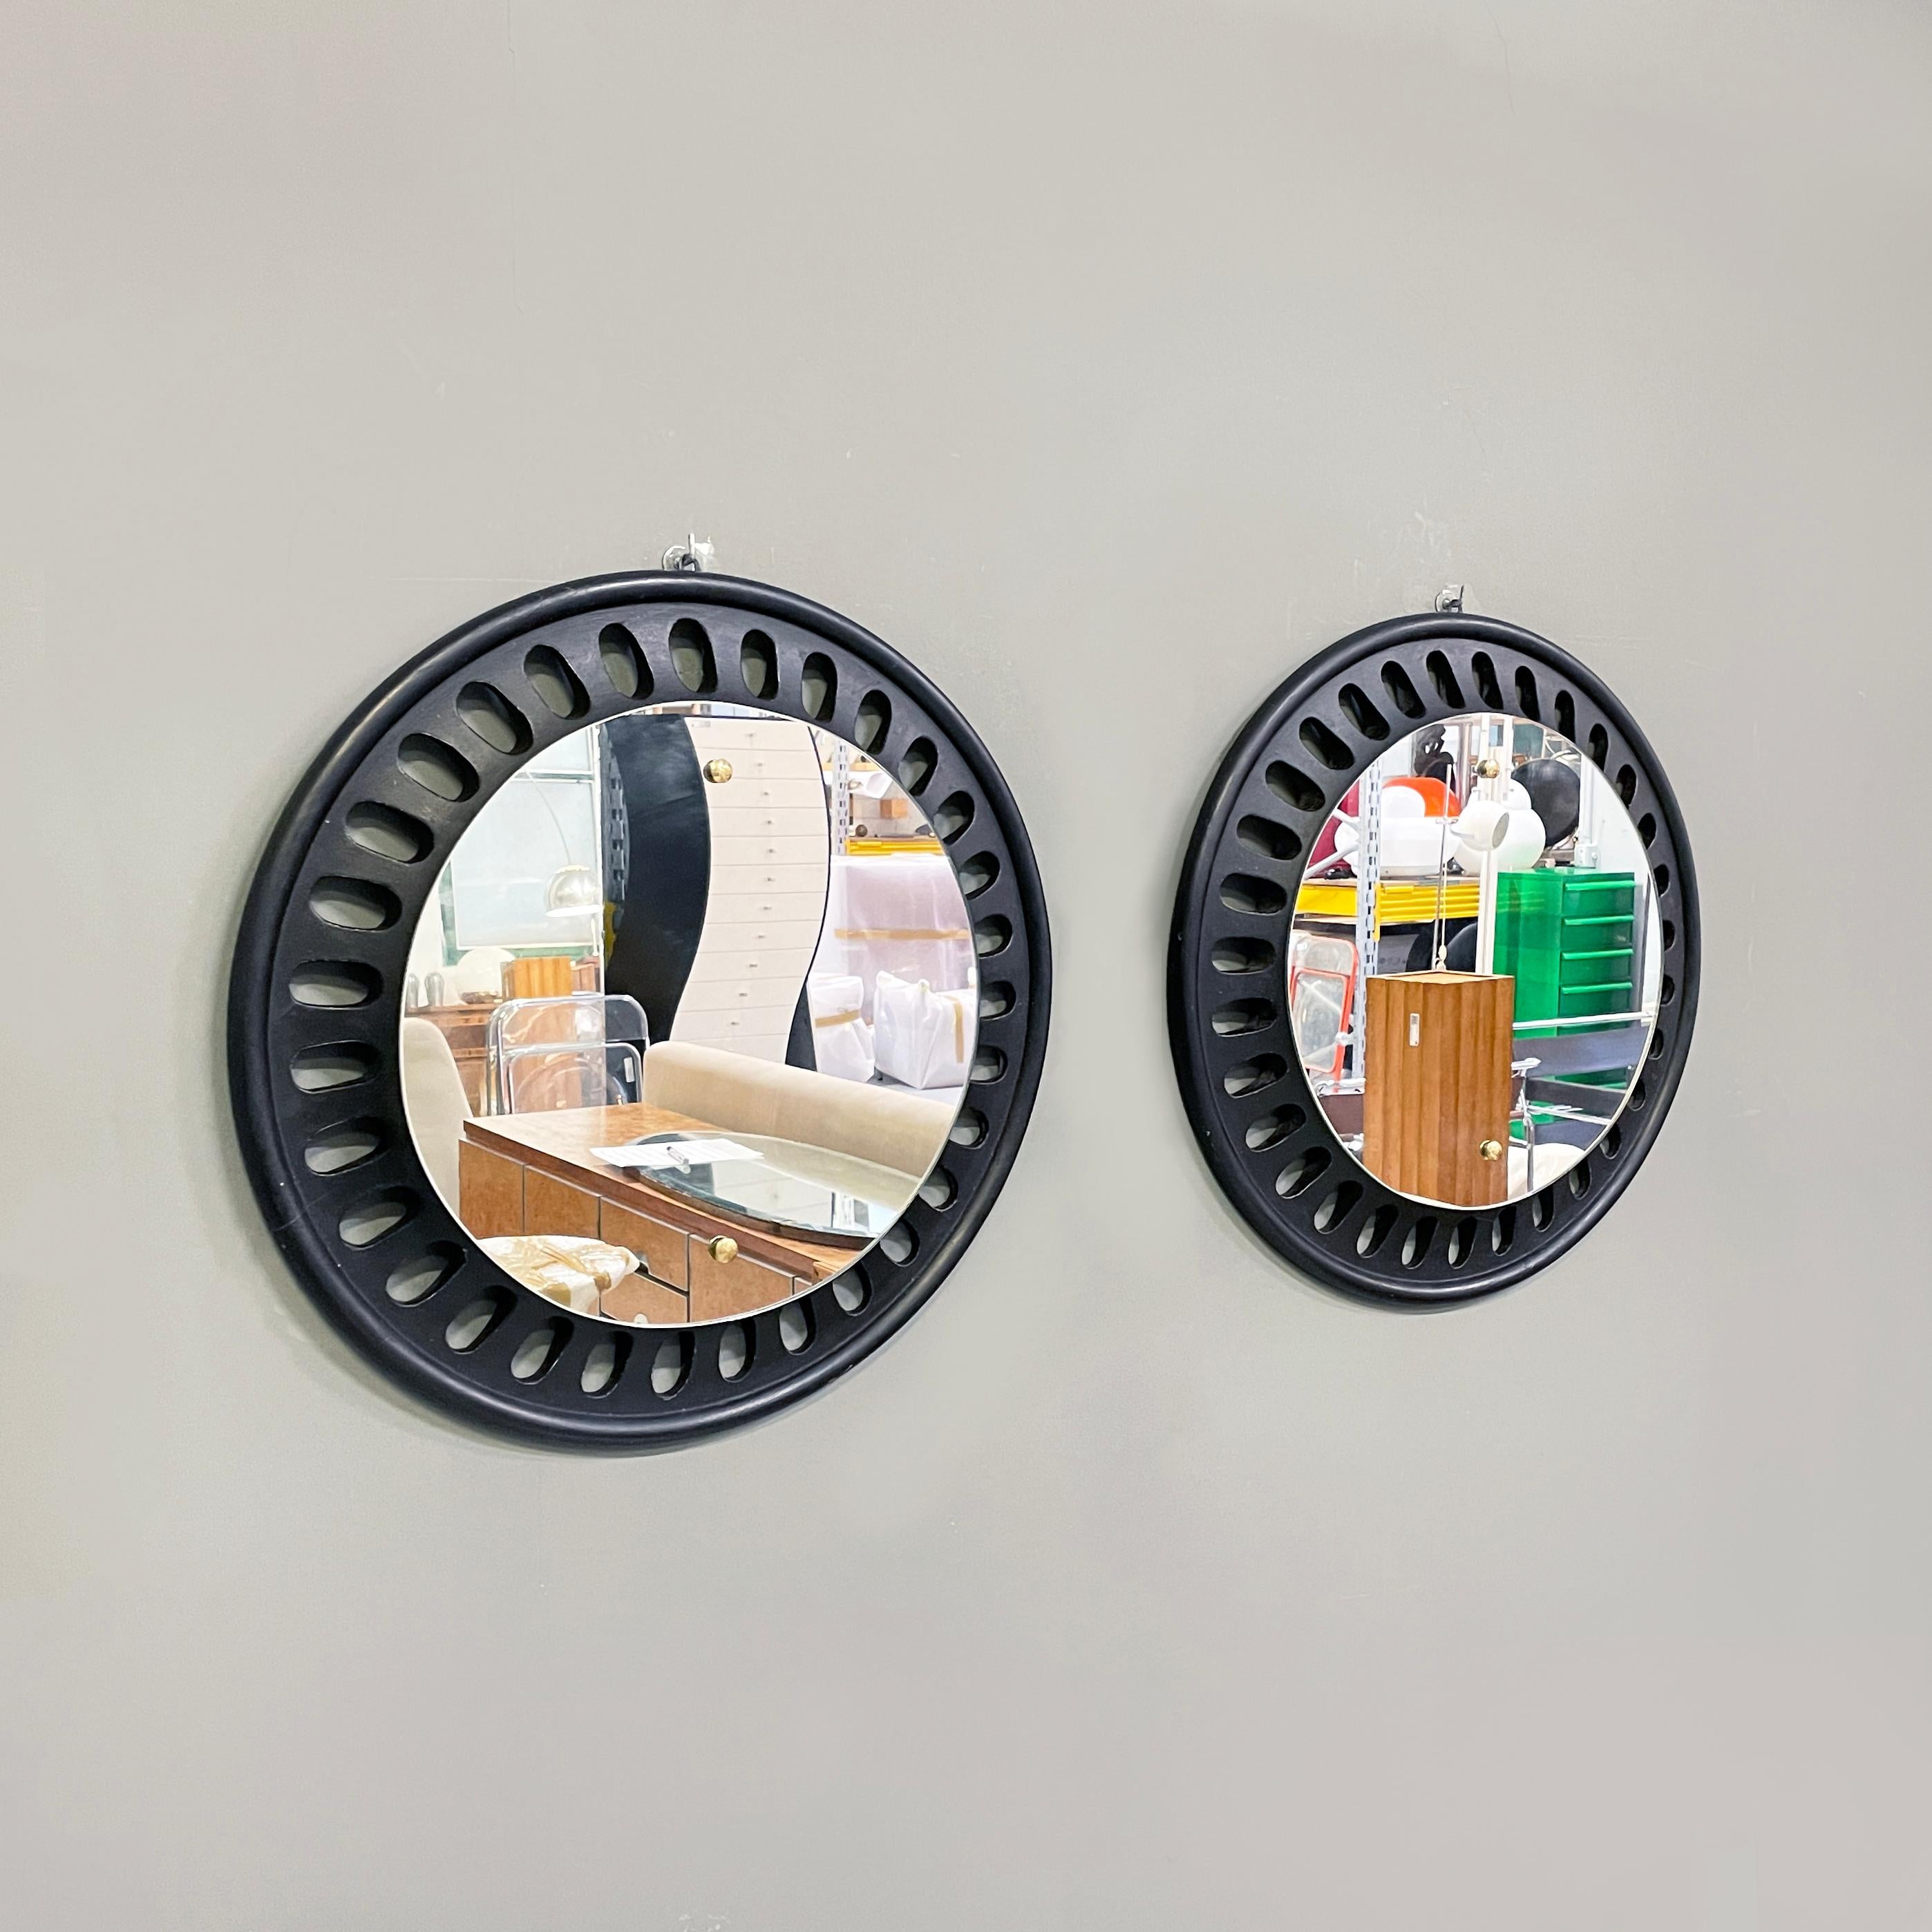 Miroirs ronds italiens en bois noir, 20e siècle
Paire de miroirs muraux ronds en bois peint en noir. Le cadre est orné de décorations ovales. Petits boutons en laiton sur le miroir. 
20e siècle.
Bon état, légères marques sur le bois. Le laiton est